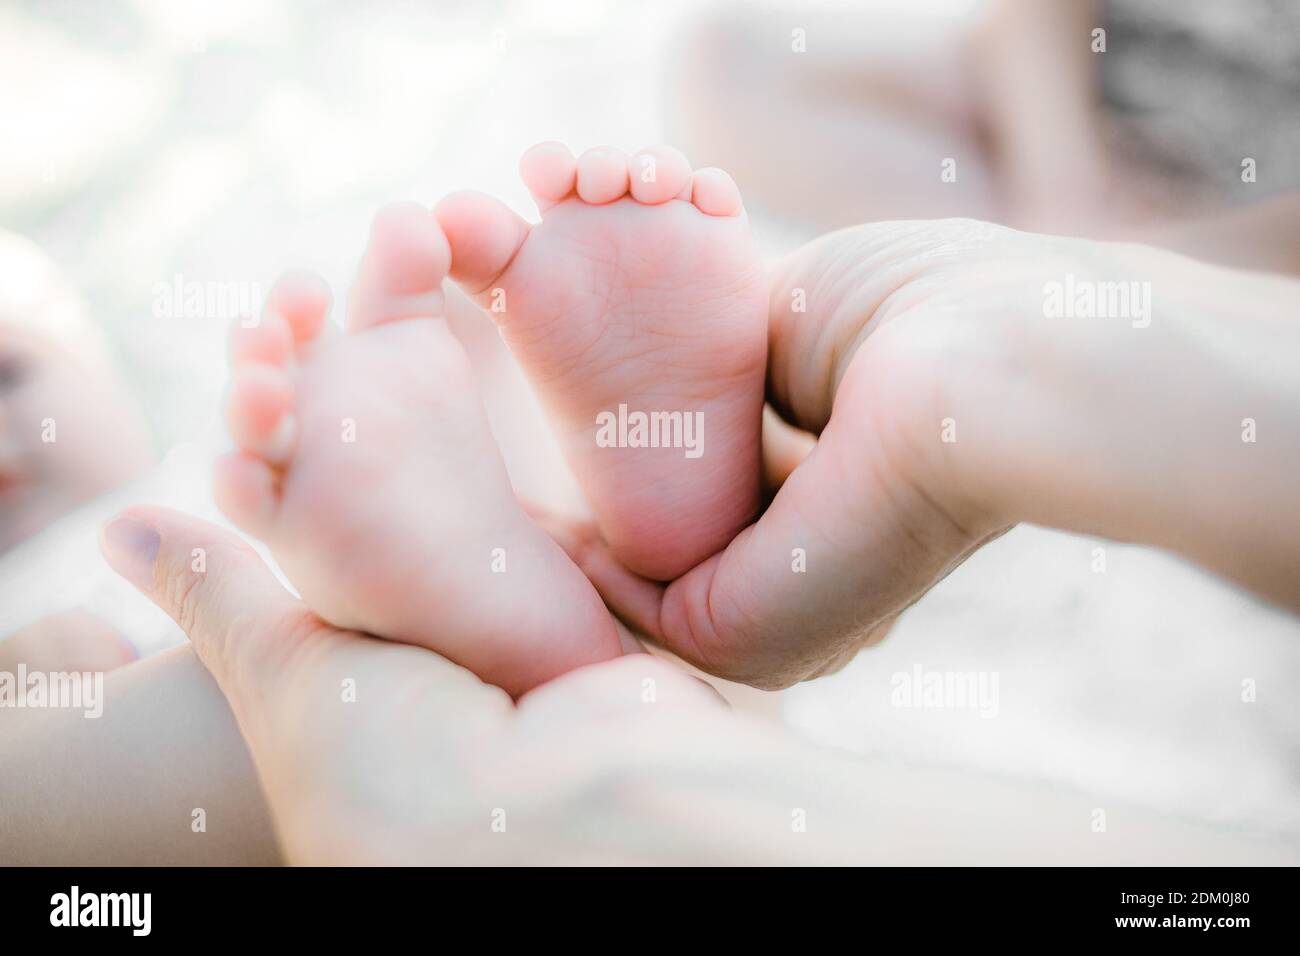 La mère tient doucement les petits pieds de son bébé dans ses mains. L'amour et les sentiments d'un parent pour son nouveau-né. Banque D'Images